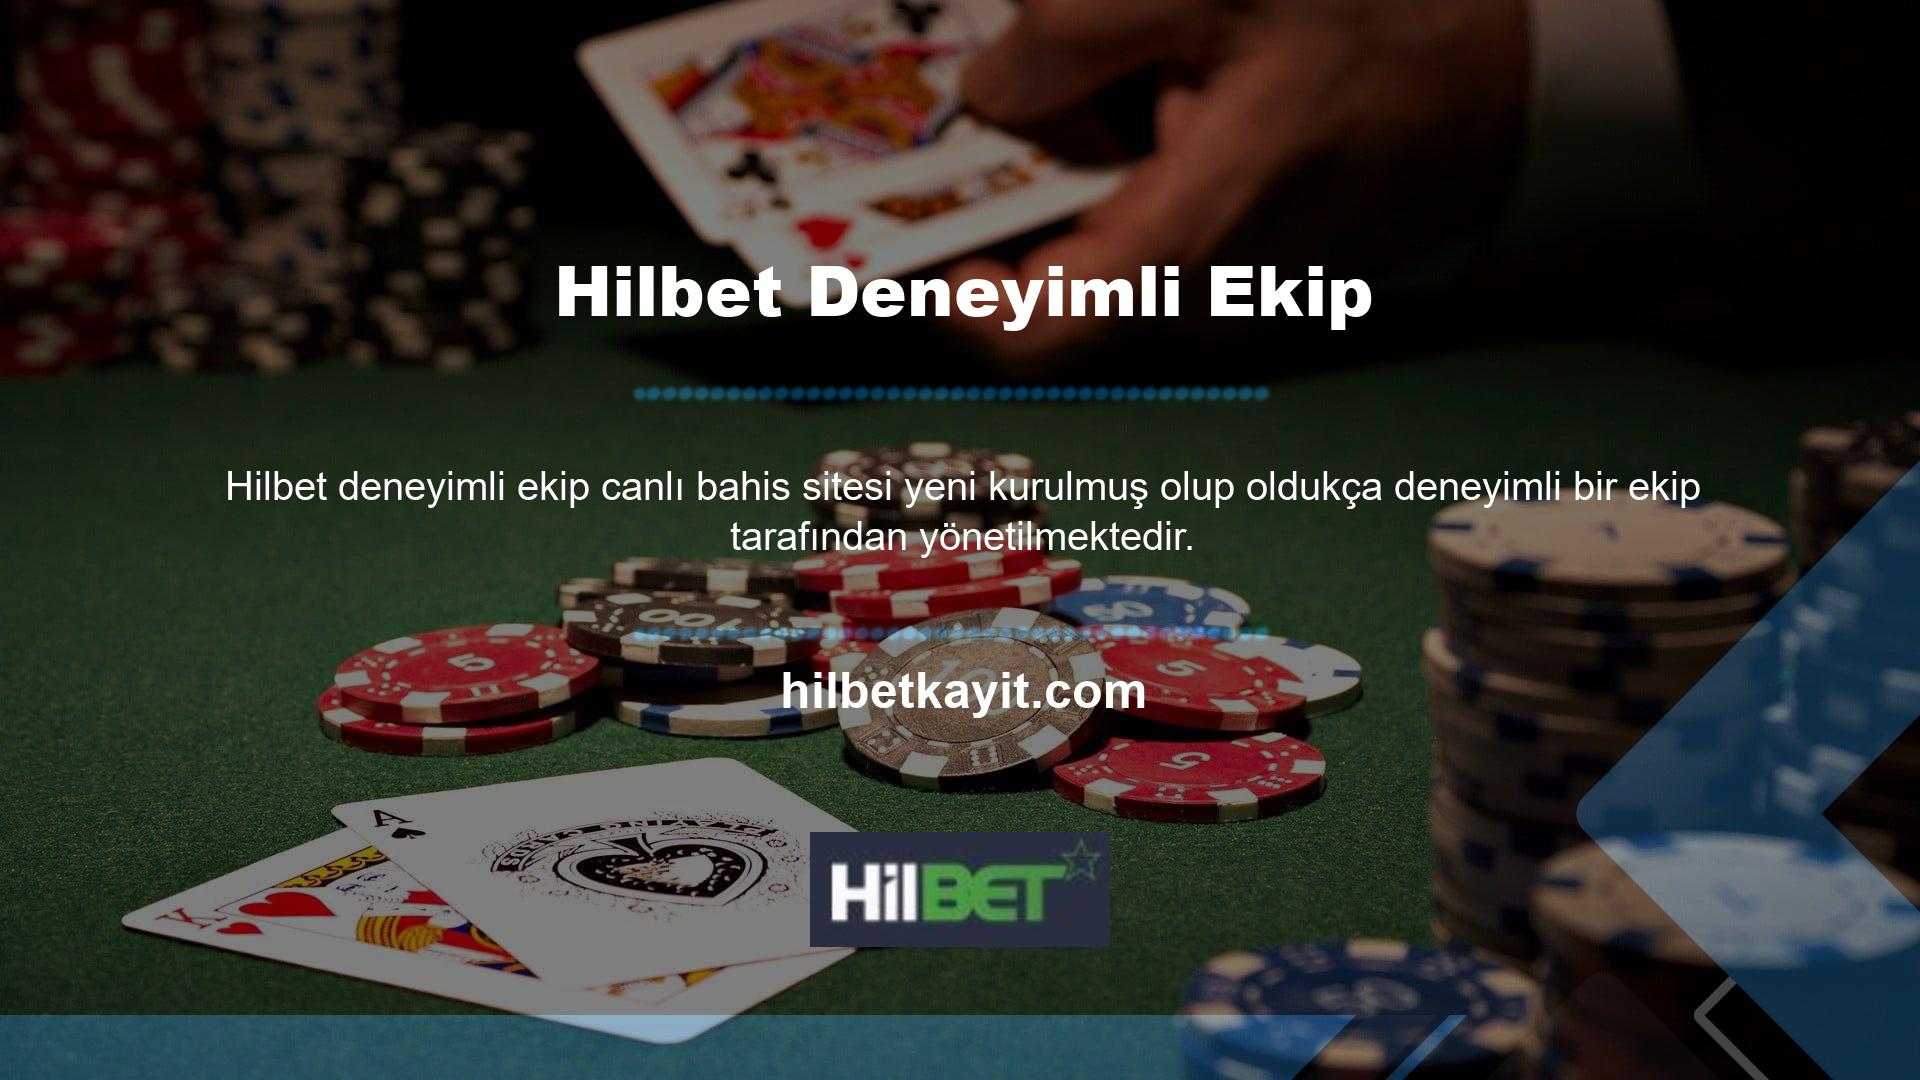 Casino faaliyetleriyle başlayan Hilbet platformu kısa sürede kalitesini kanıtlamıştır